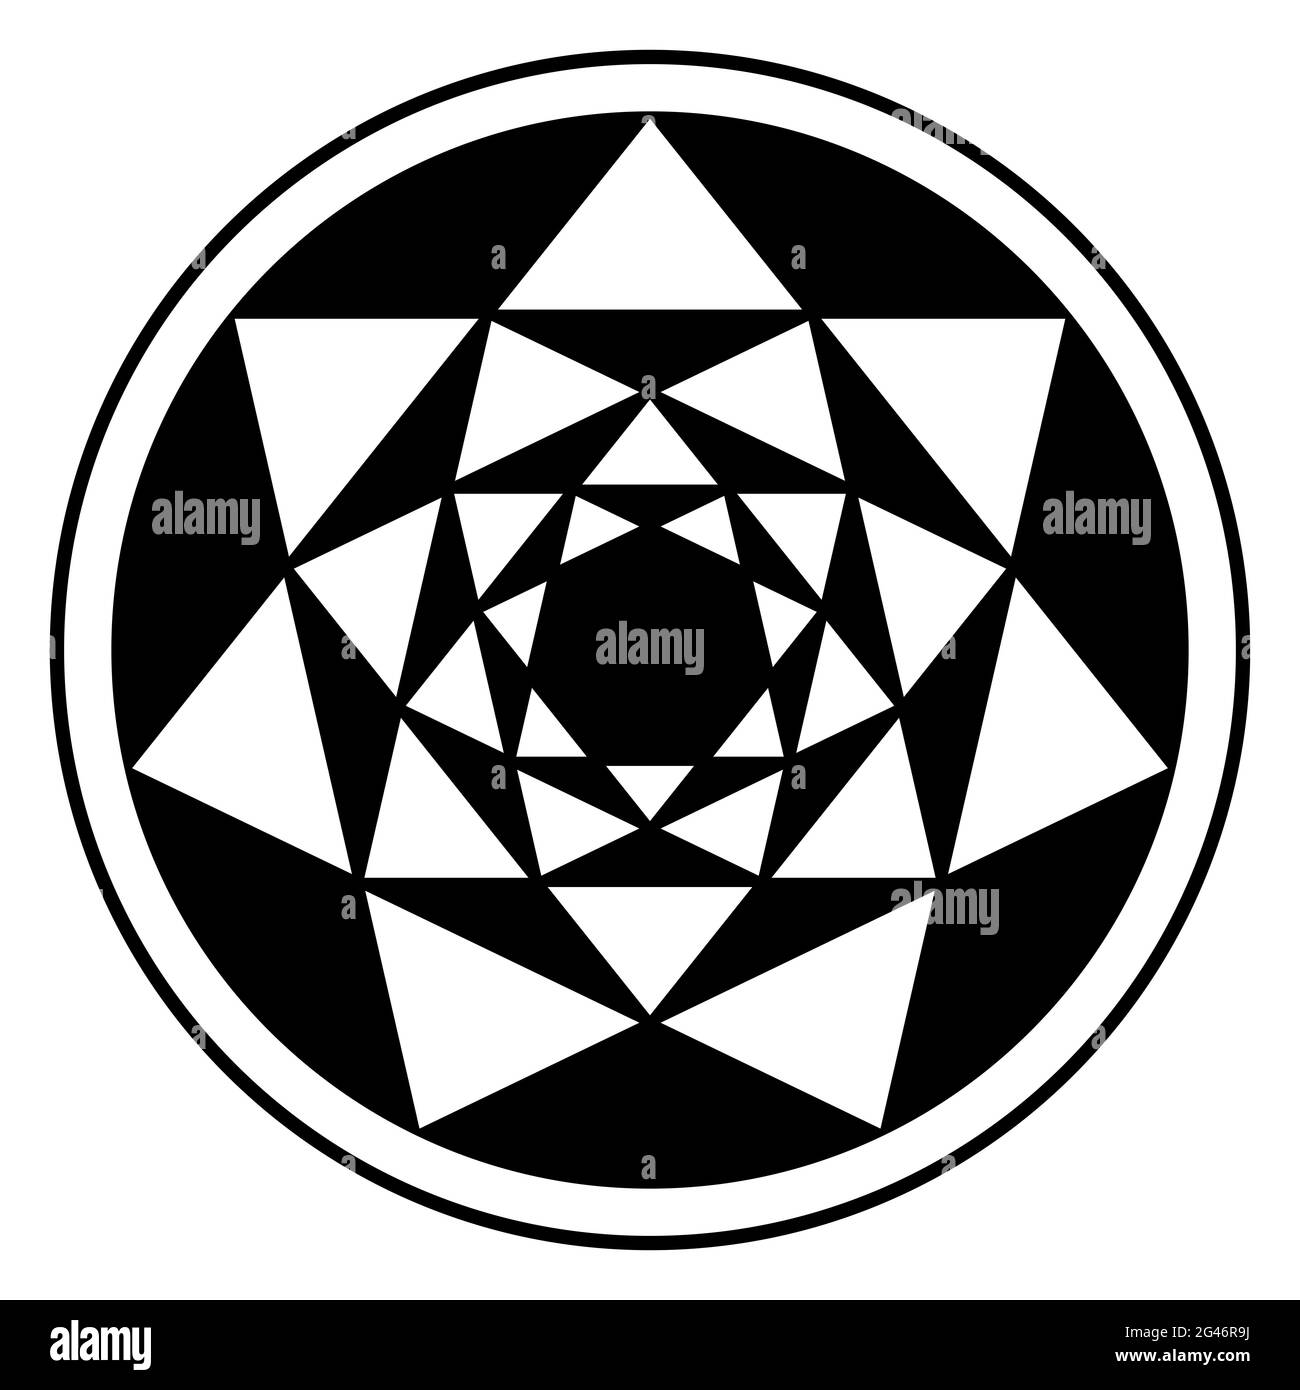 Se invirtieron cuatro heptagragramas, y sus patrones triangulares resultantes, en un marco circular. Puntos de cruce de estrellas de siete puntas colocadas una dentro de la otra. Foto de stock